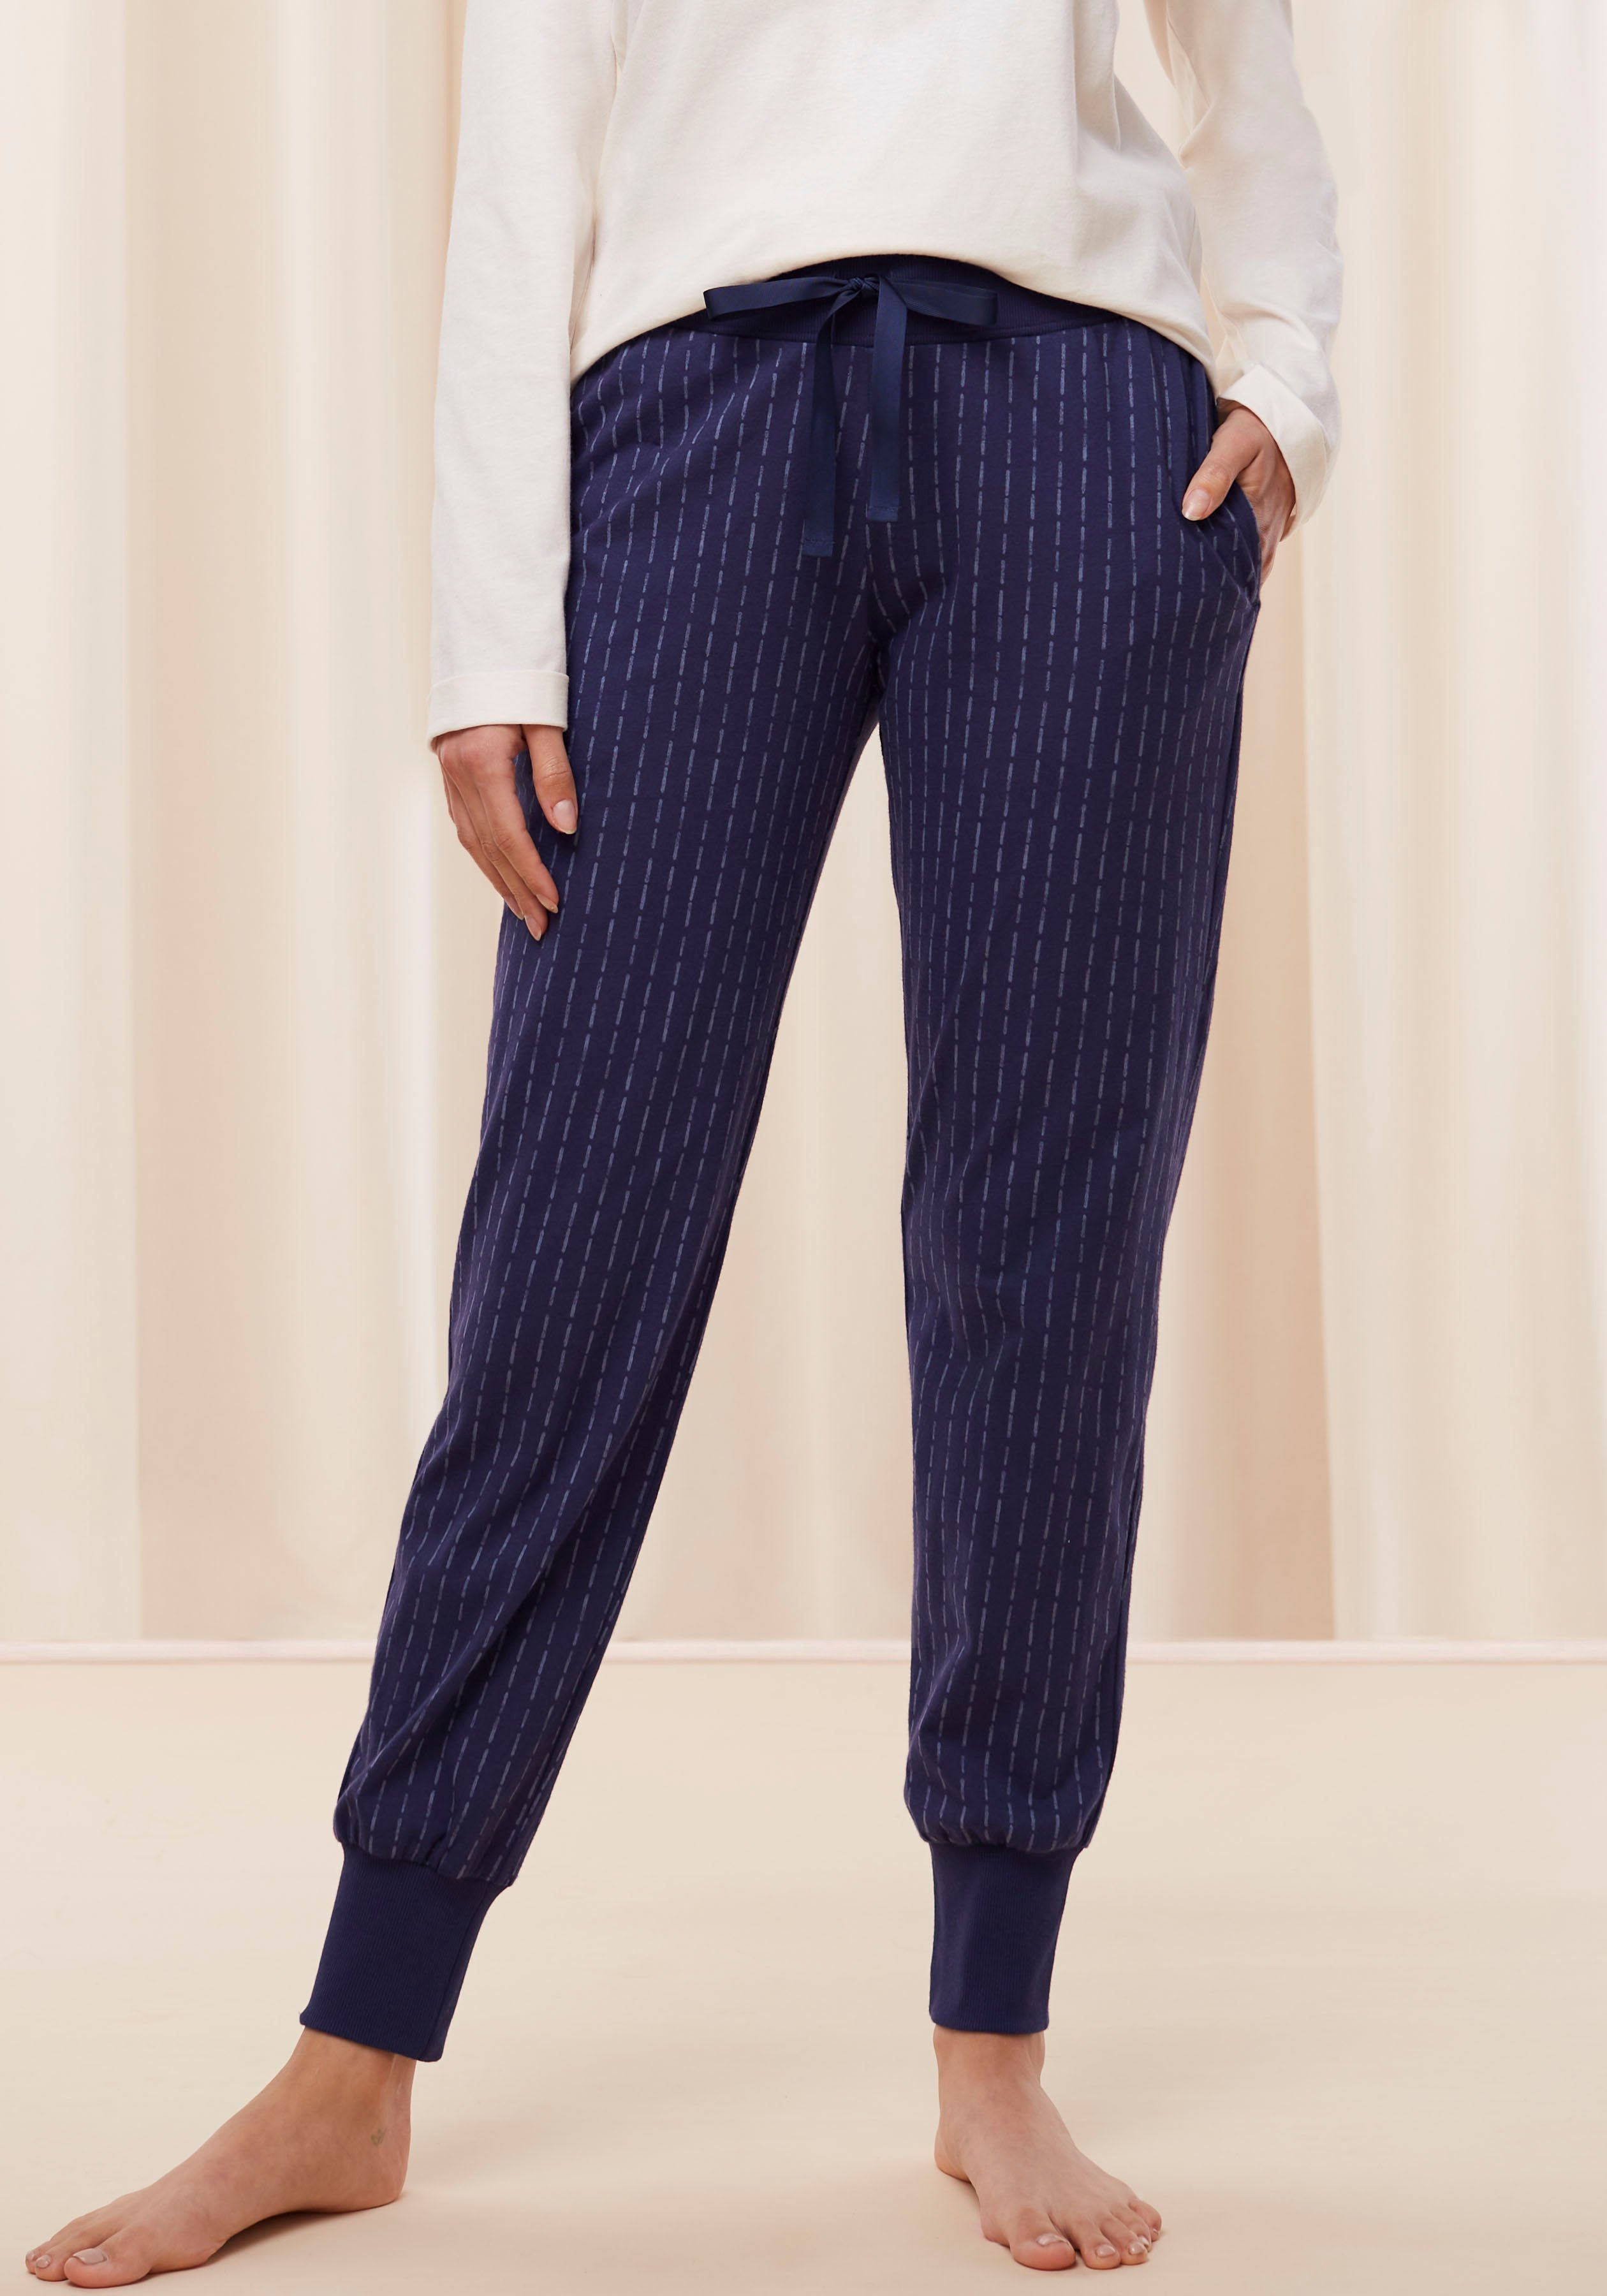 Super meistverkaufte Produkte Triumph Schlafhose Mix & Pyjamahose Trousers Jersey X 02 bedruckt Match